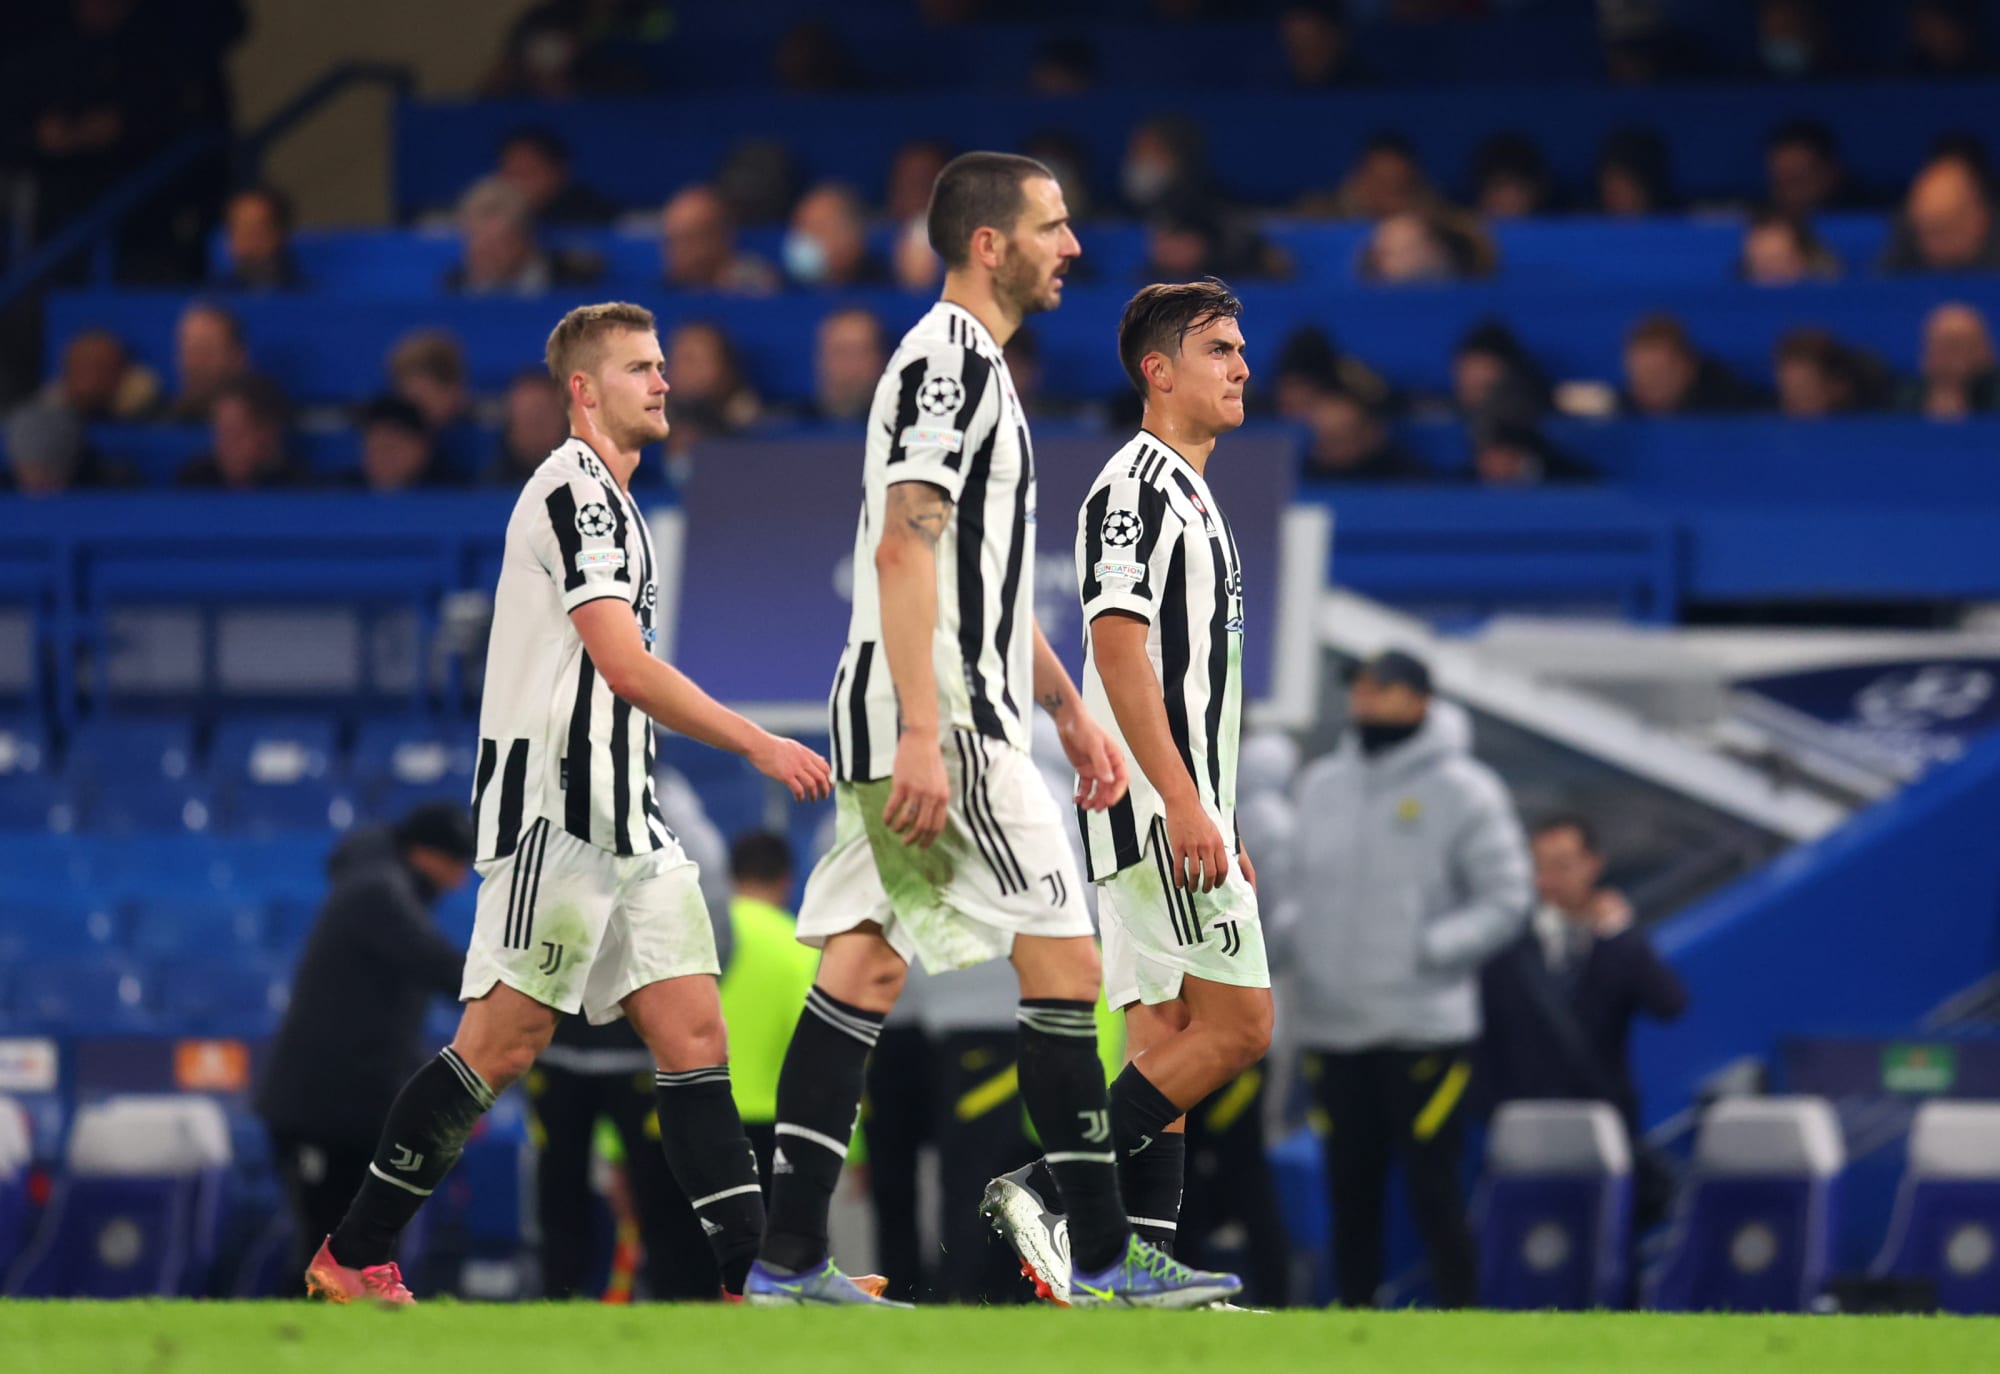 Chelsea 4-0 Juventus: 3 key takeaways from Juve&#39;s heaviest UCL defeat -  Flipboard